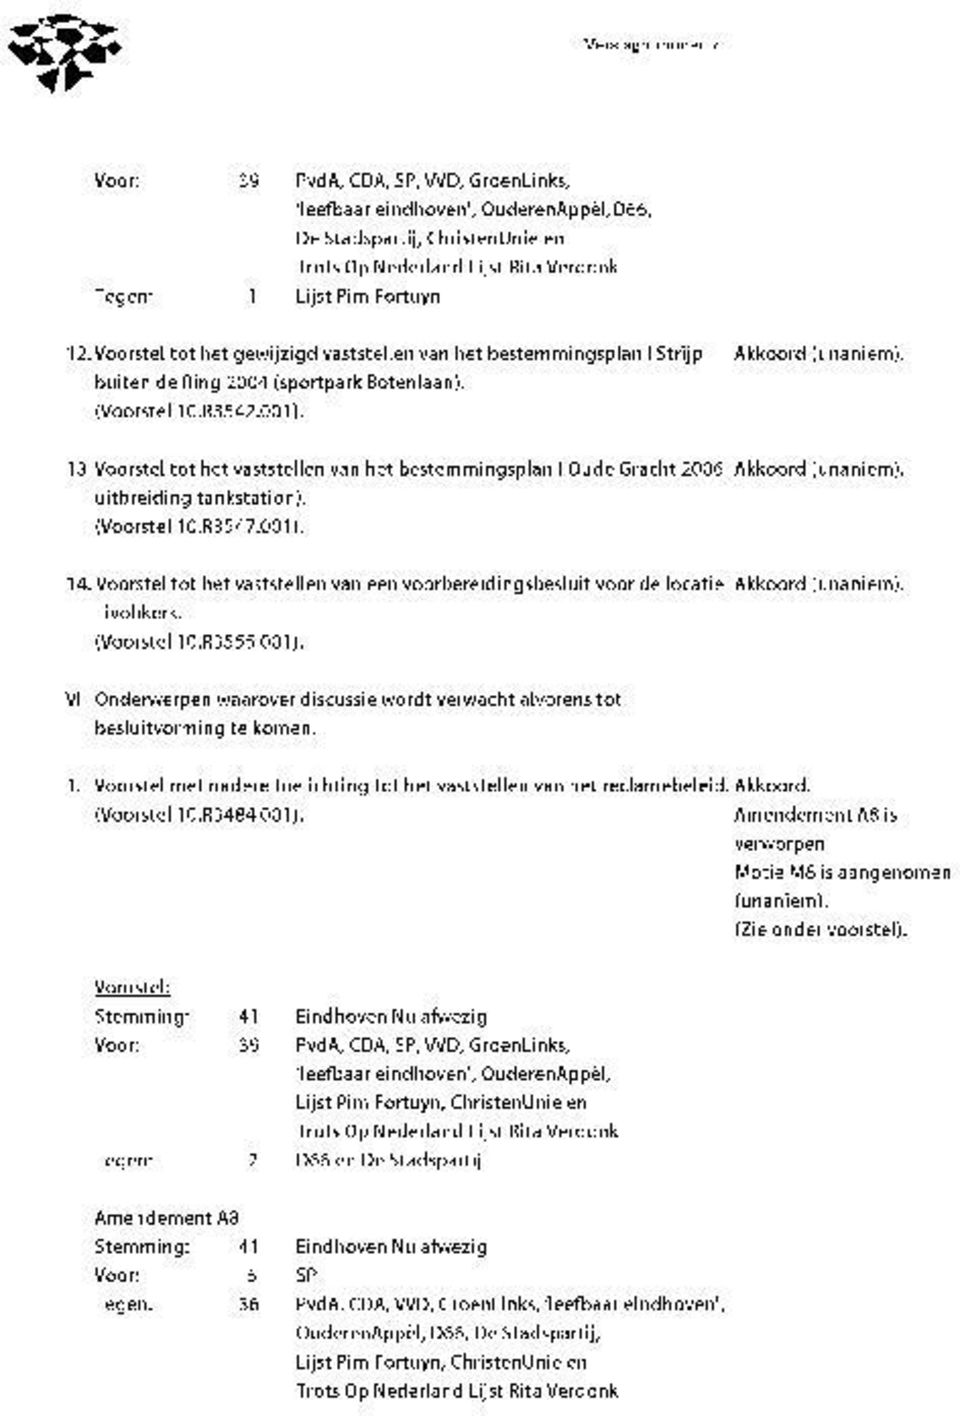 Voorstel tot het vaststellen van het bestemmingsplan I Oude Gracht 2006 Akkoord (unaniem). uitbreiding tankstation). (Voorstel 10.R3547.001). 14.